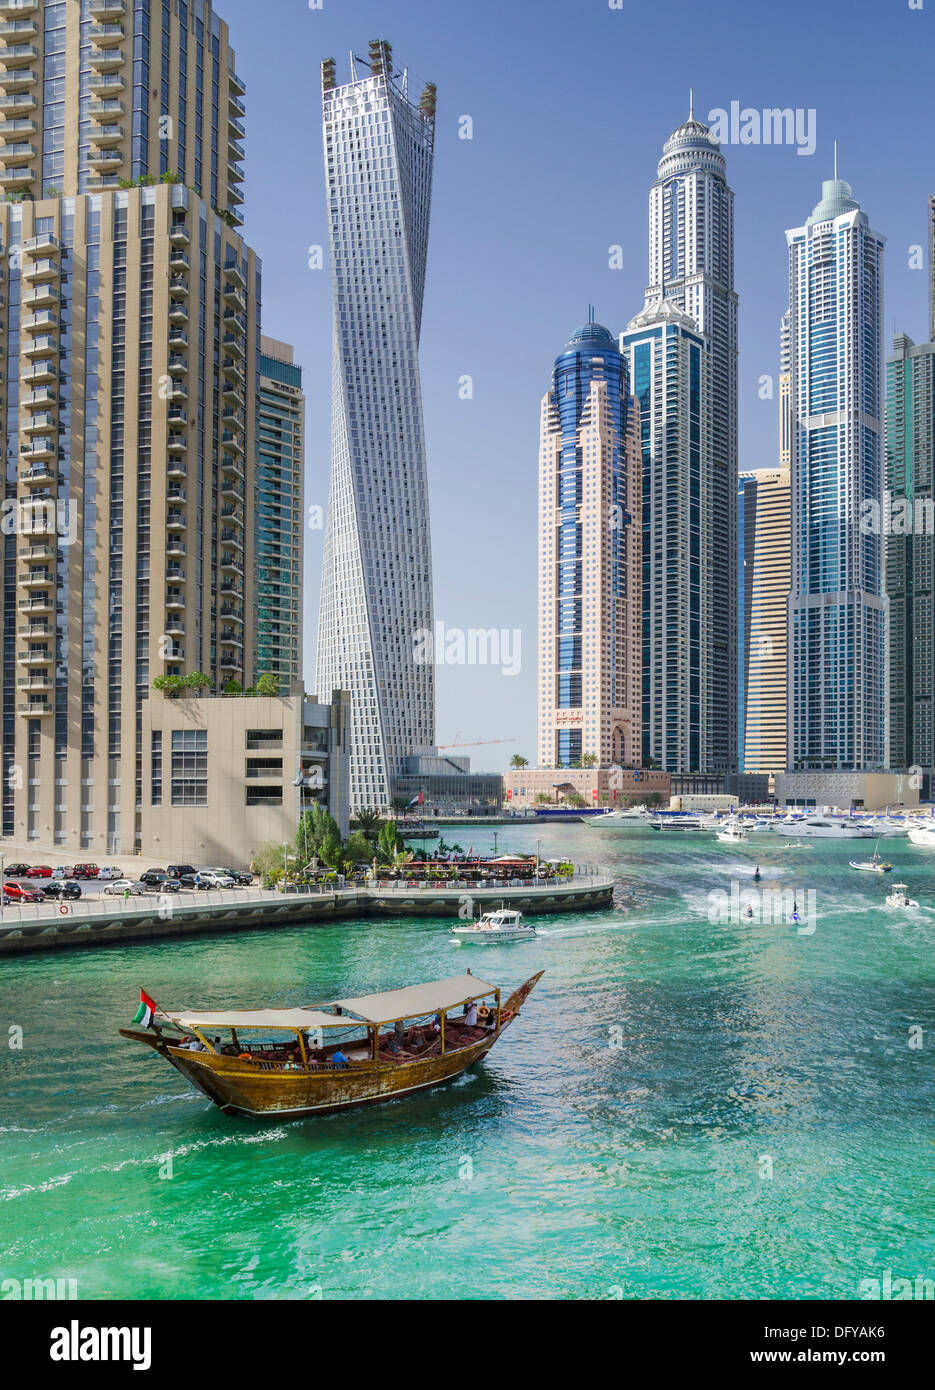 Un dhow voile navigue autour de la Marina de Dubaï à la suite d'eau du jet ski sous les gratte-ciel et la promenade de la Marina de Dubaï Banque D'Images